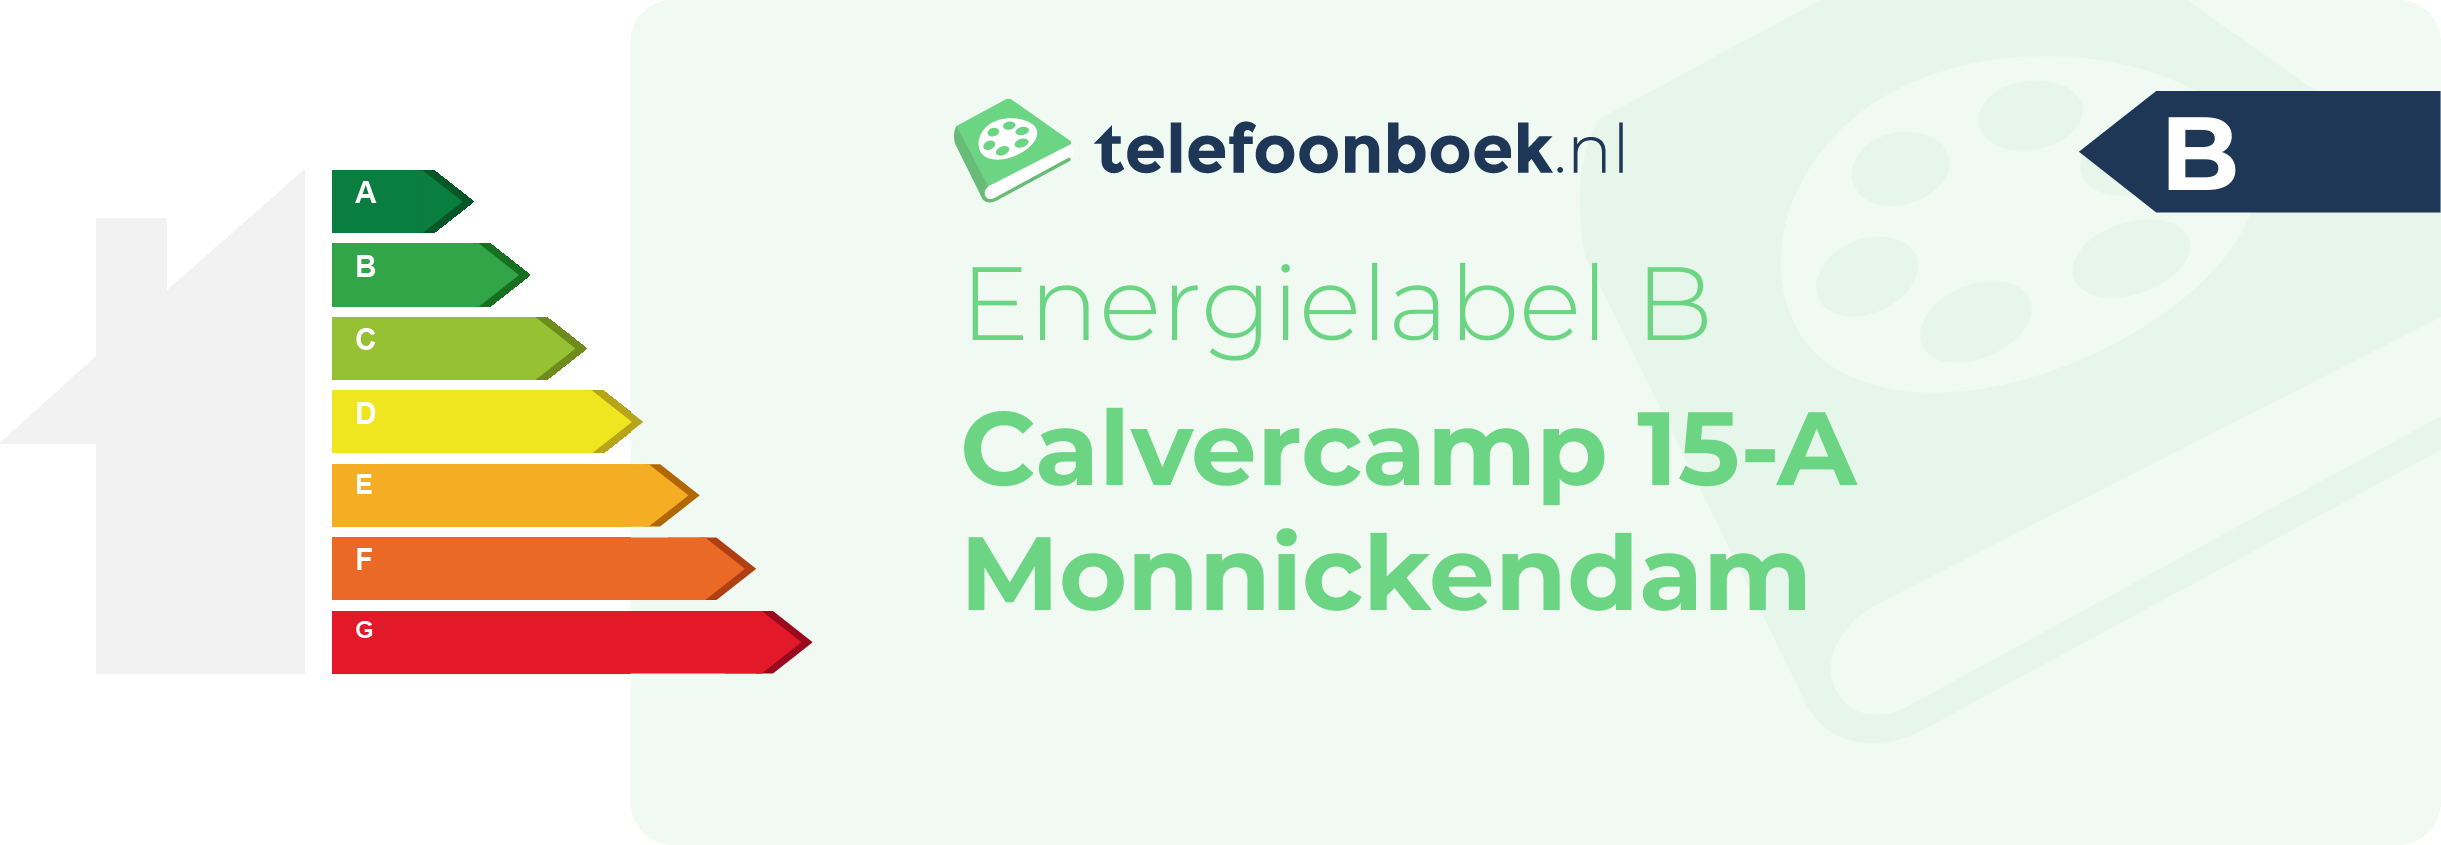 Energielabel Calvercamp 15-A Monnickendam